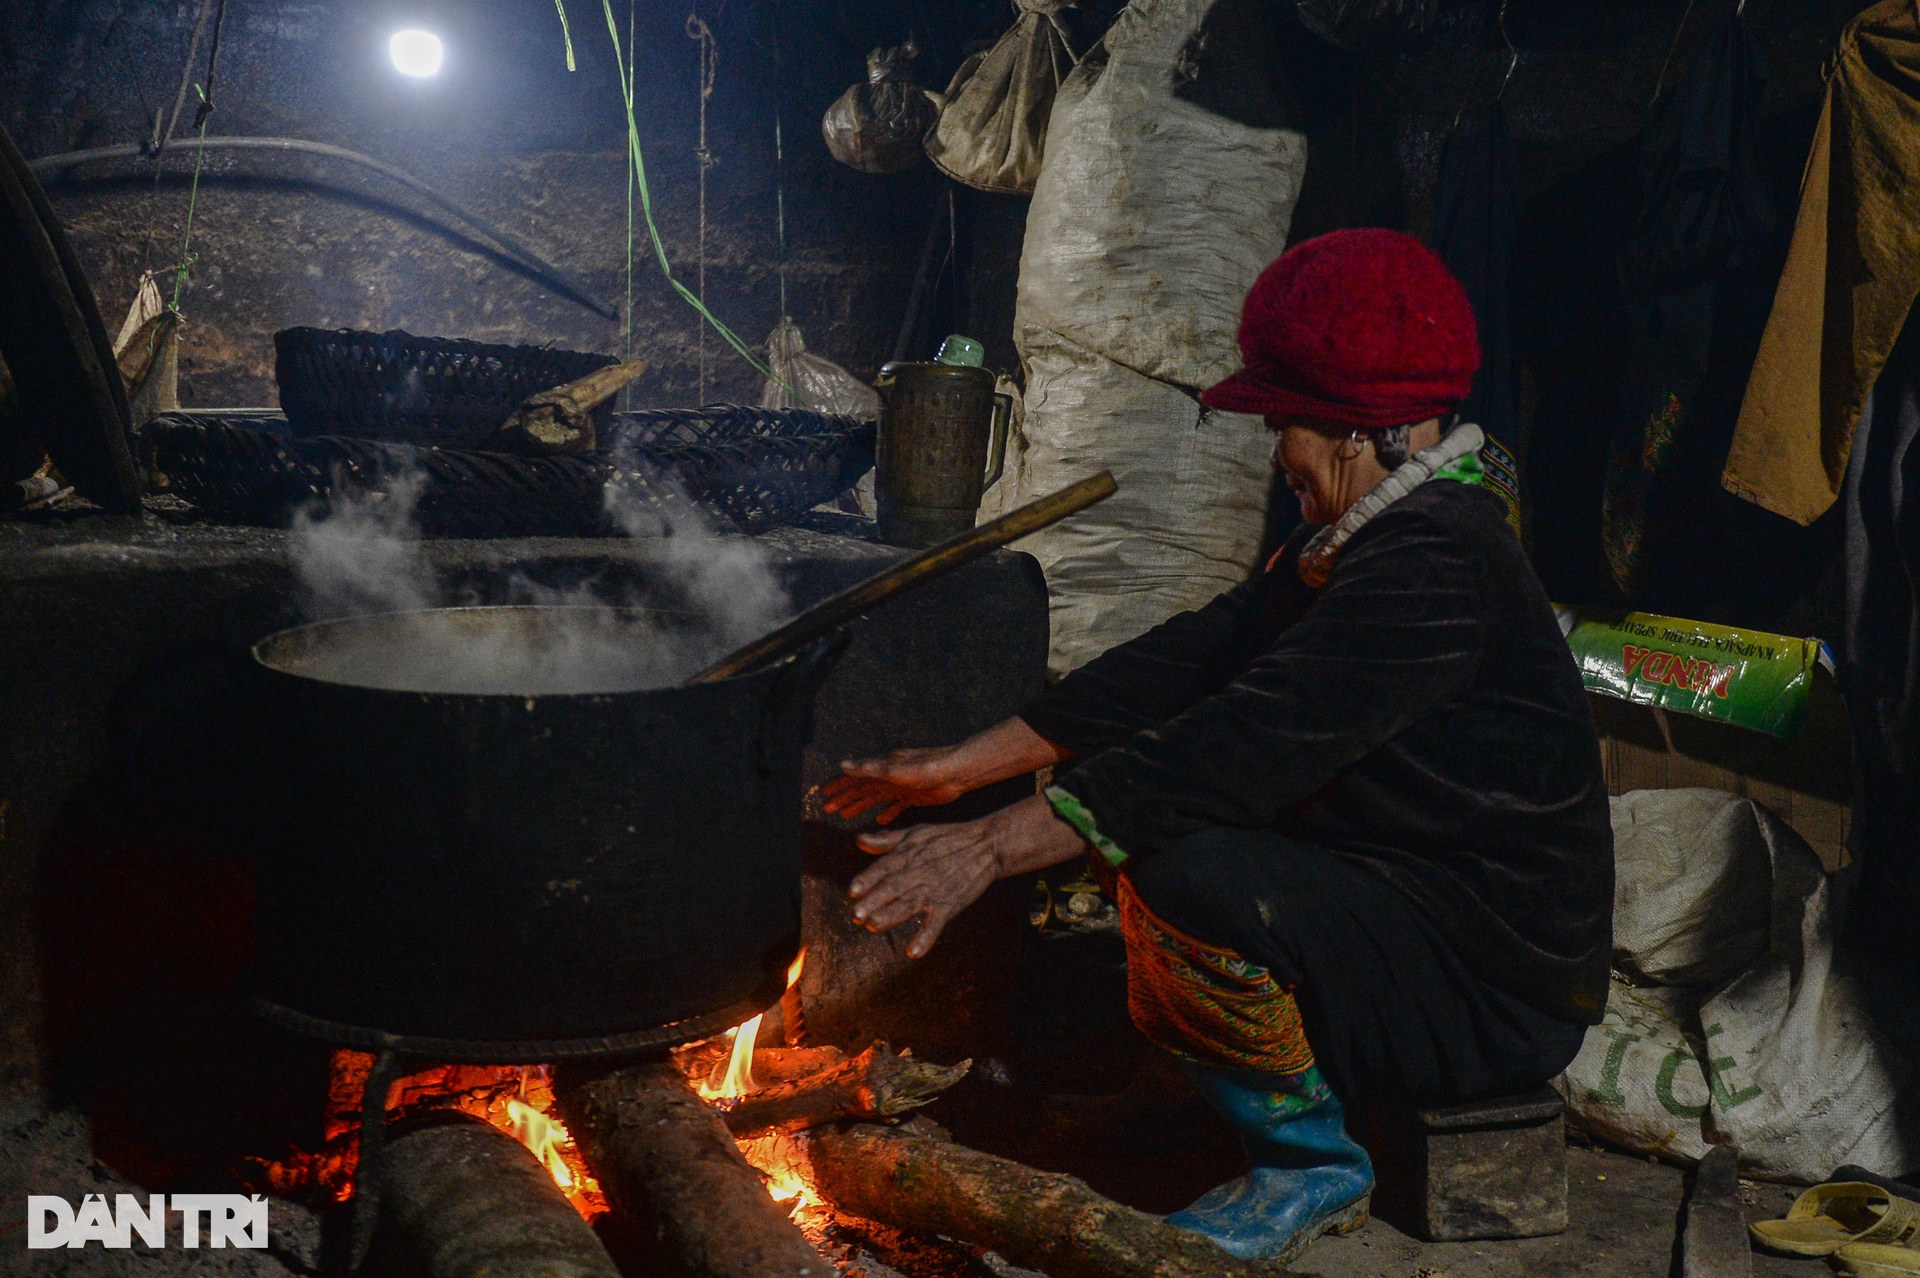 Cuộc sống của người dân vùng núi Mẫu Sơn trong những ngày lạnh thấu xương - 4